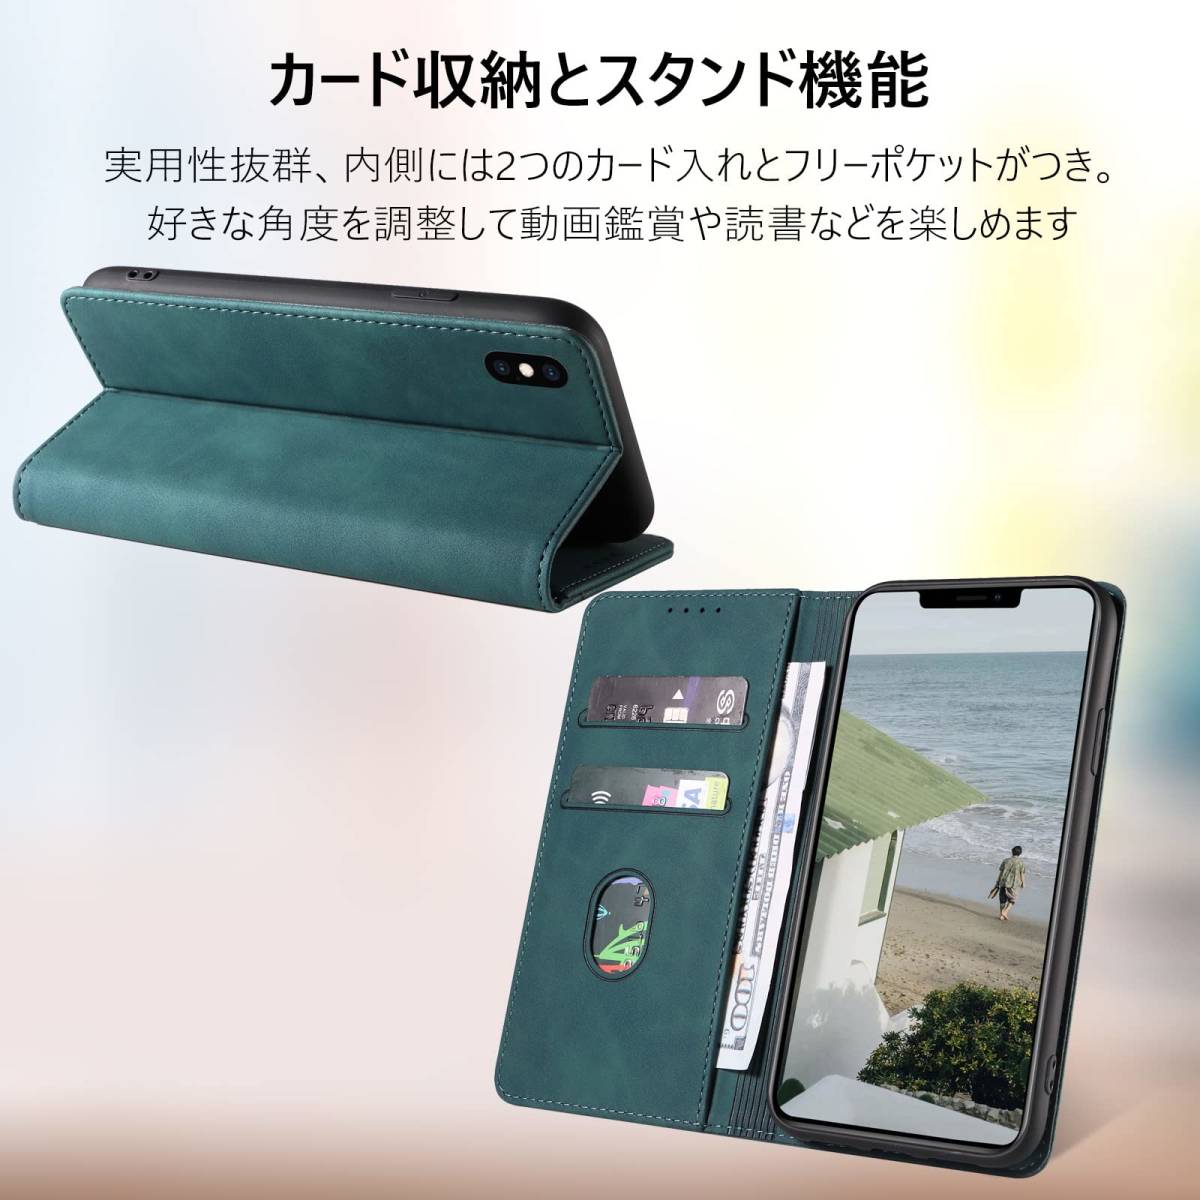 【特価セール】アイフォン10s 耐衝撃 iphone10s 全面保護 人気 内蔵マグネット x iphone 防塵 肌感レザー 肌